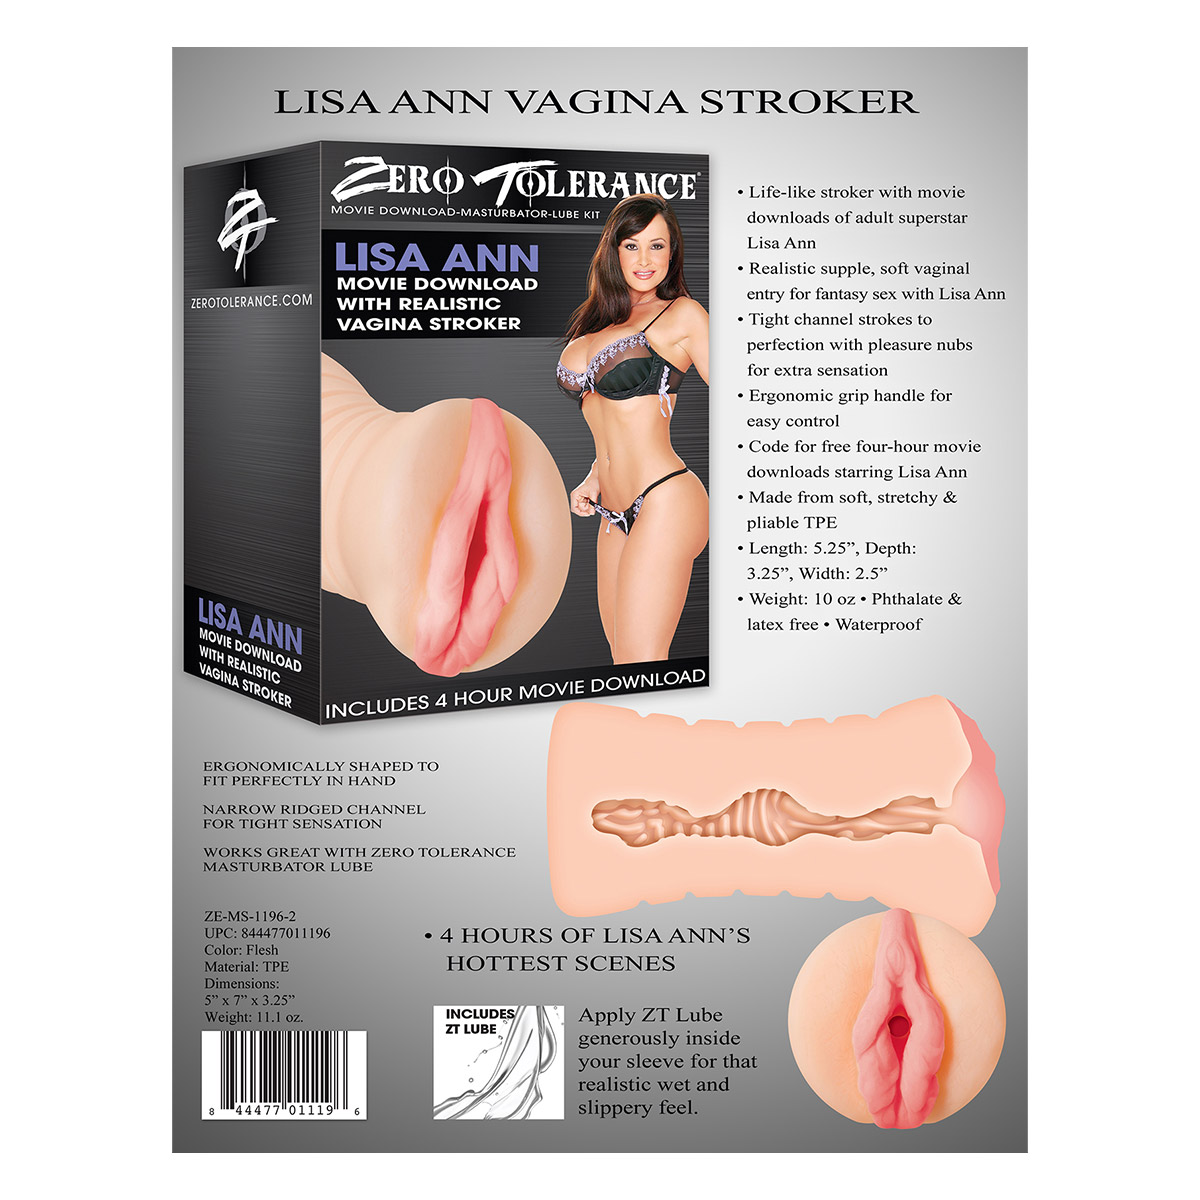 â®Lisa-Ann-vagina-stroker-back.jpg